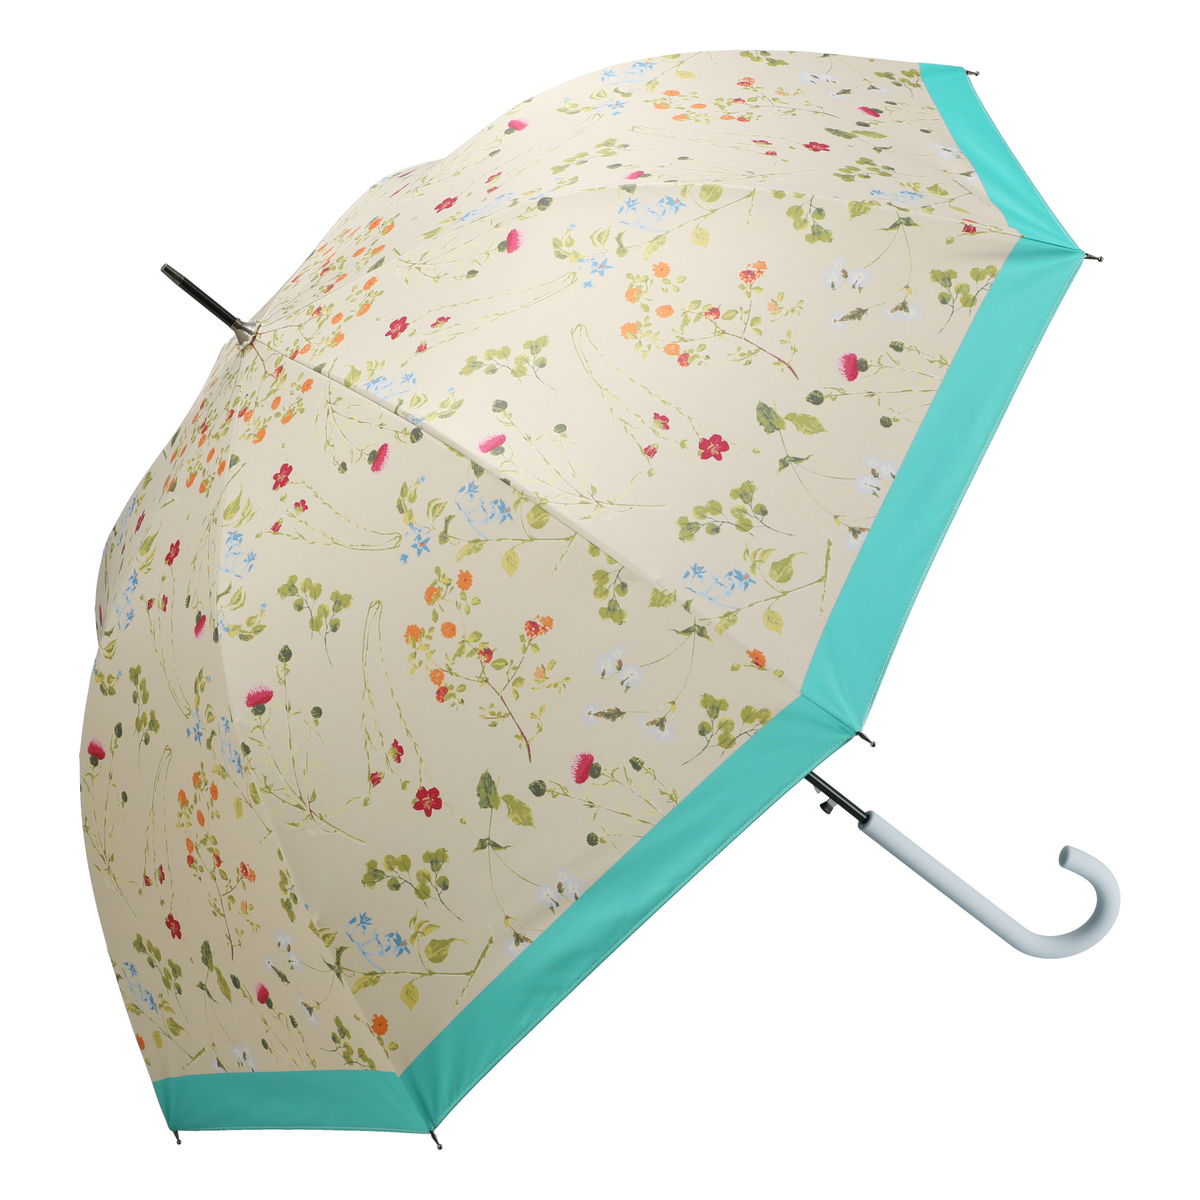  ルナジュメール UV+1級遮光+晴雨兼用ボタニカル柄長傘  ブルーグリーン